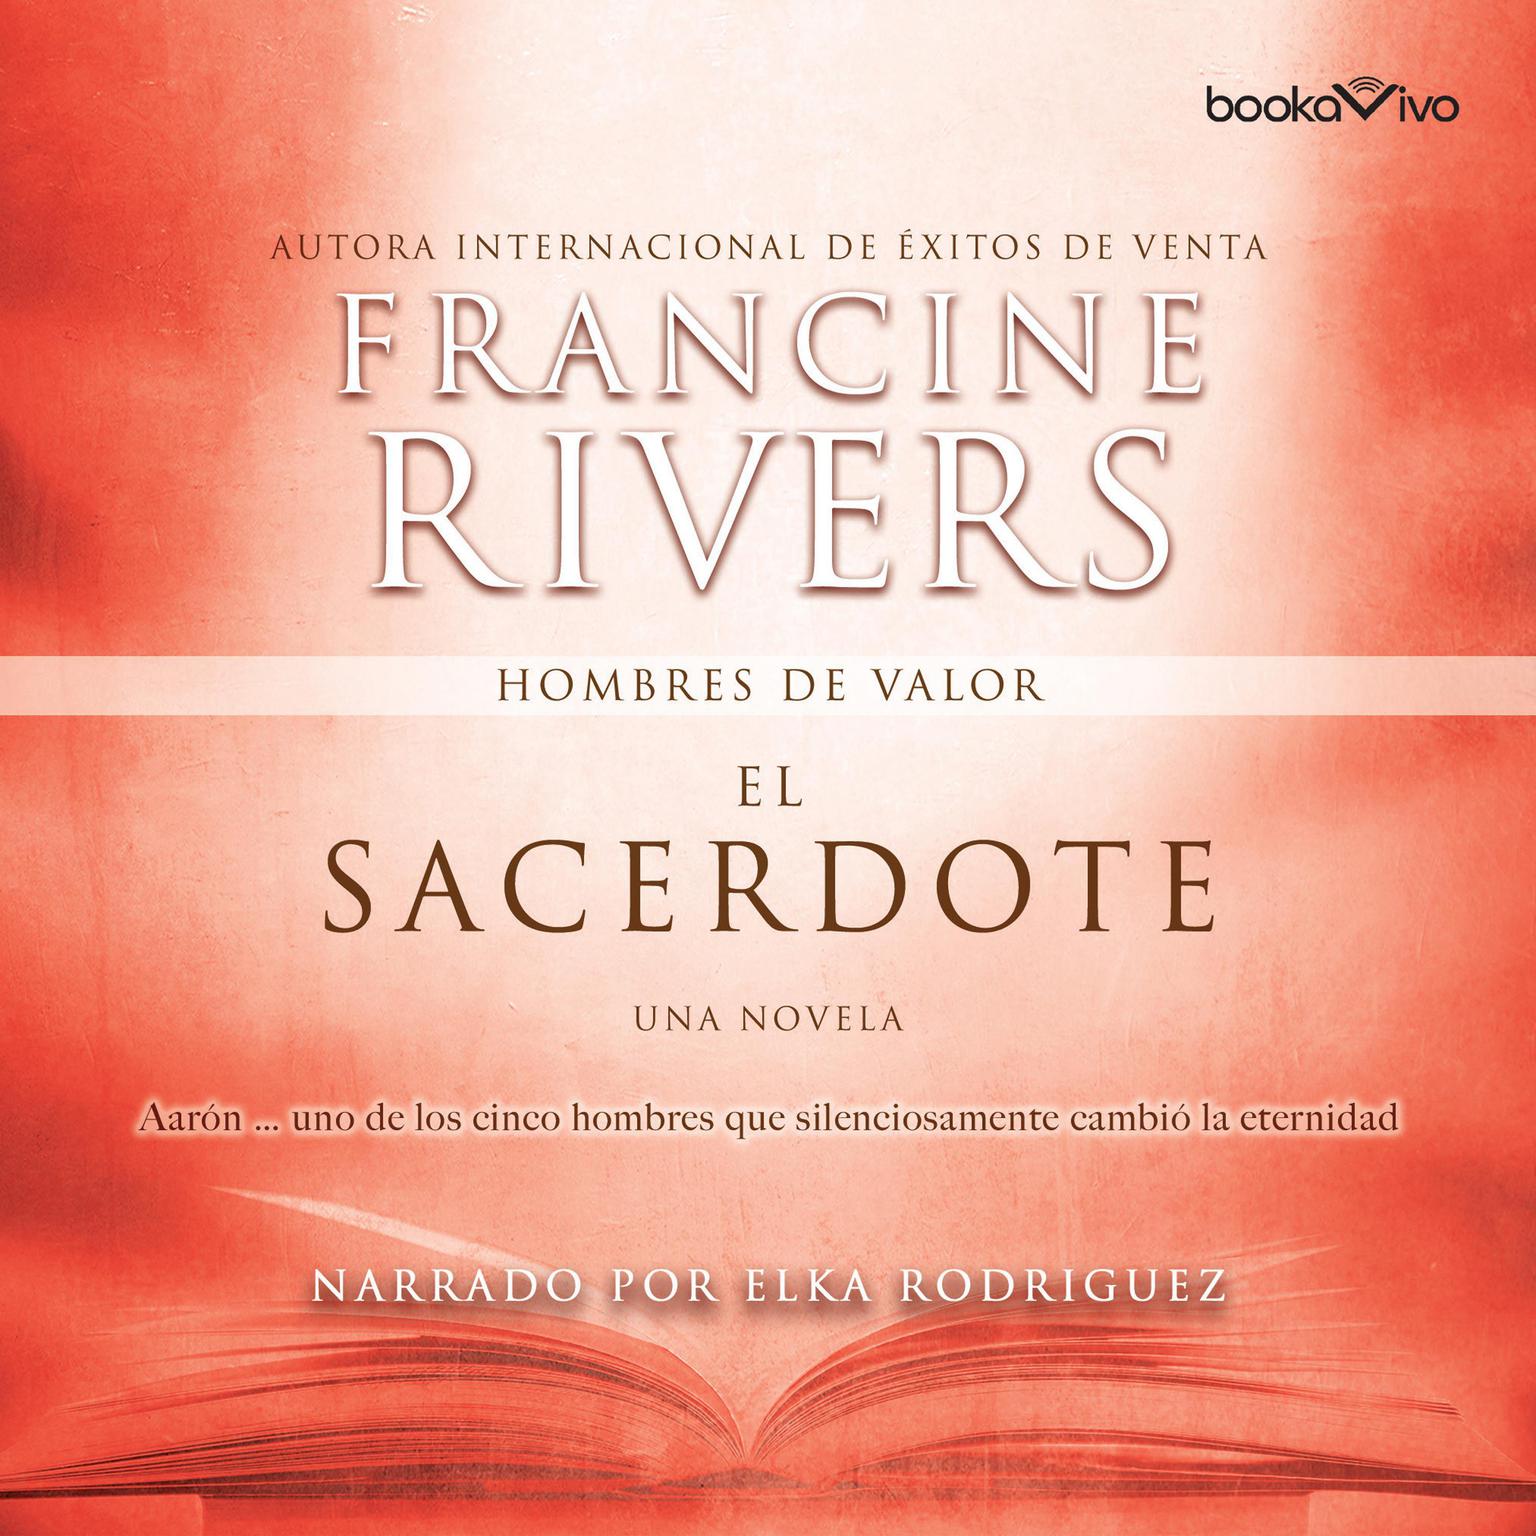 El sacerdote: Aaron Audiobook, by Francine Rivers